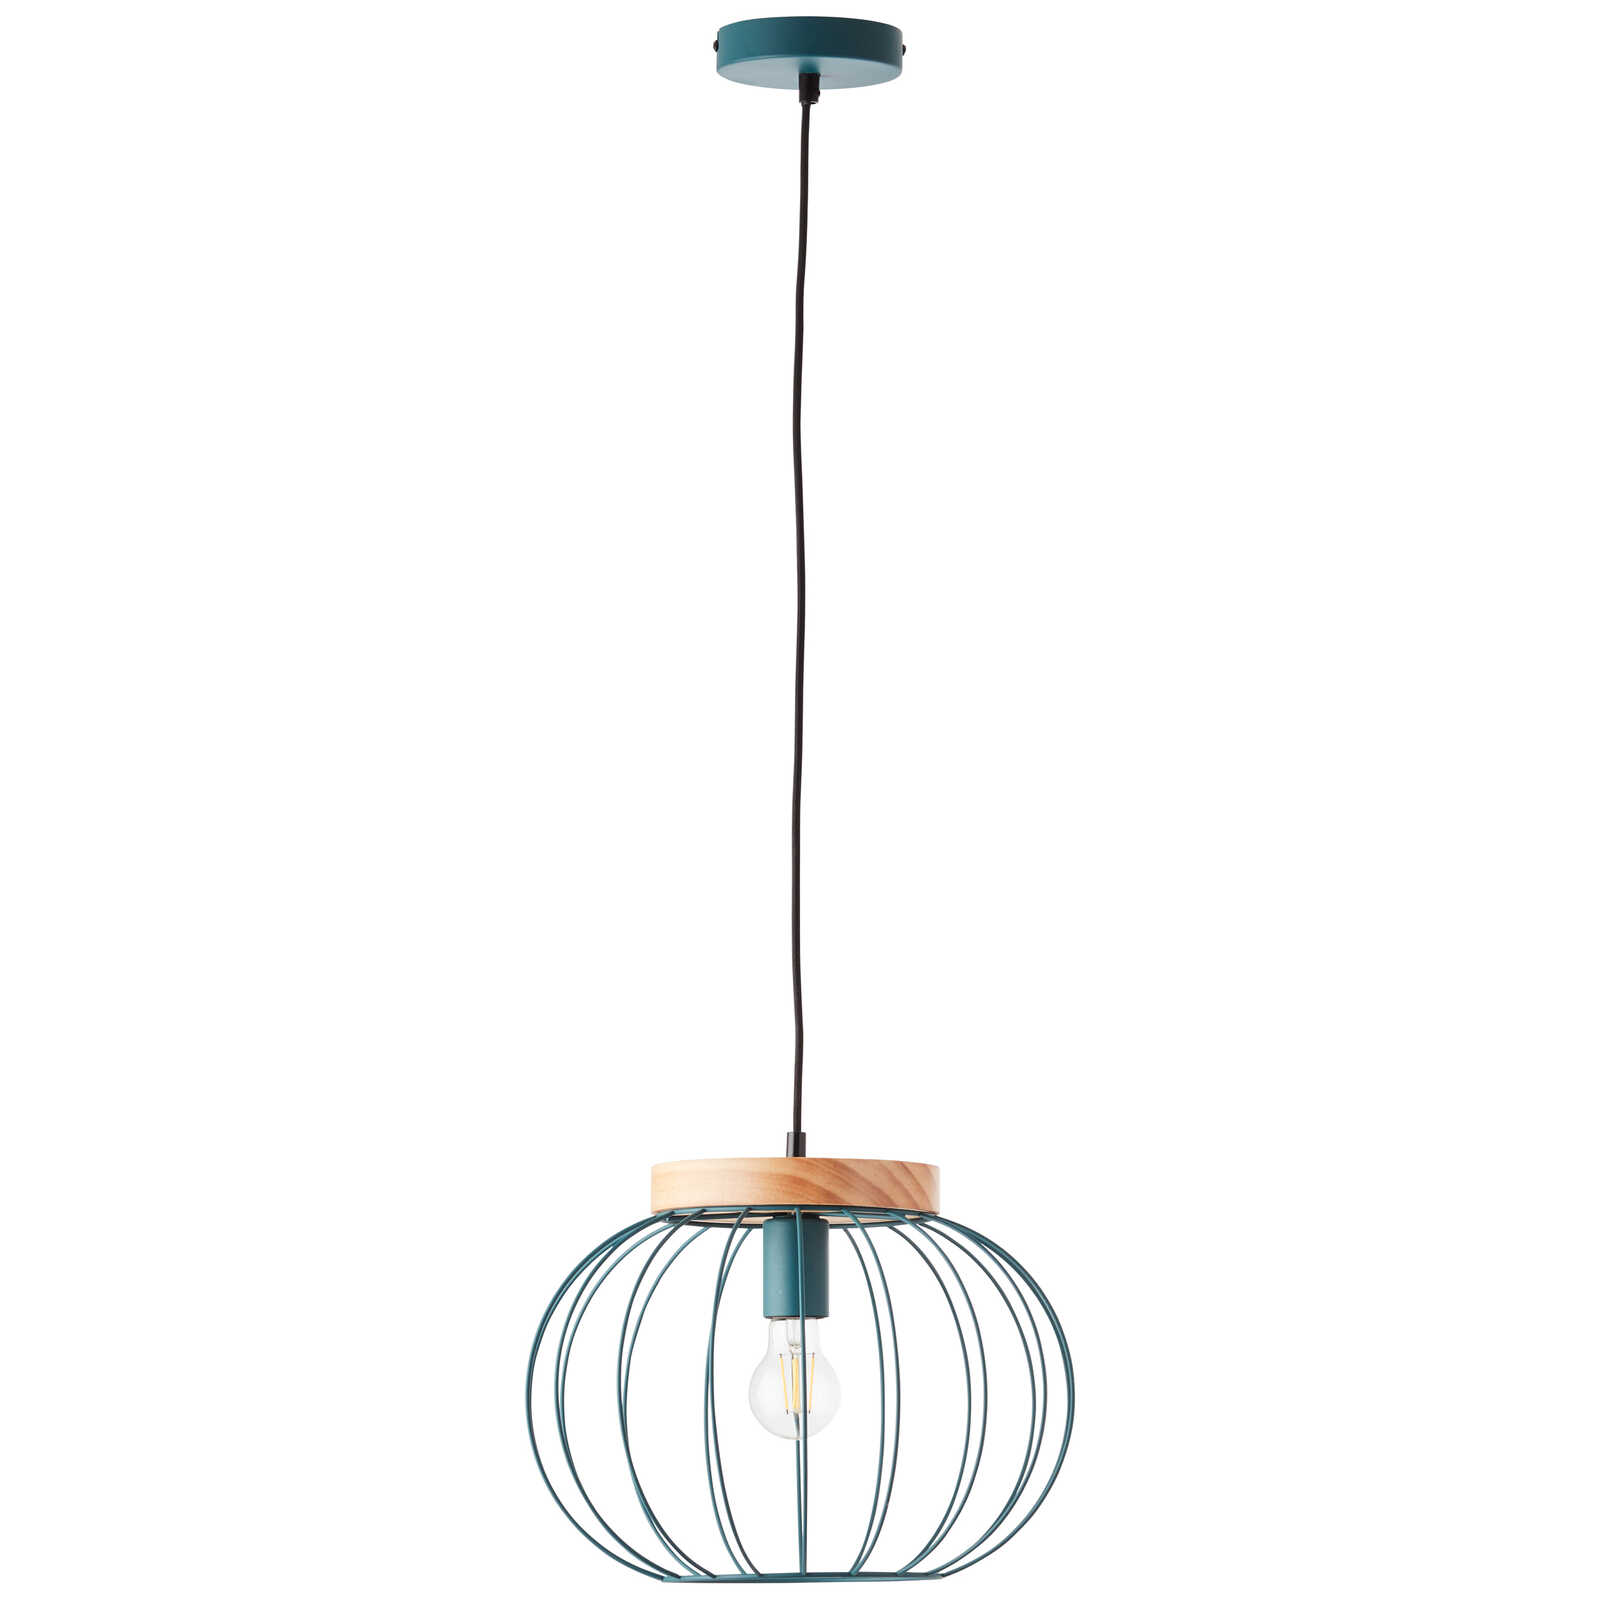             Lámpara colgante de madera - Oliver 1 - Azul
        